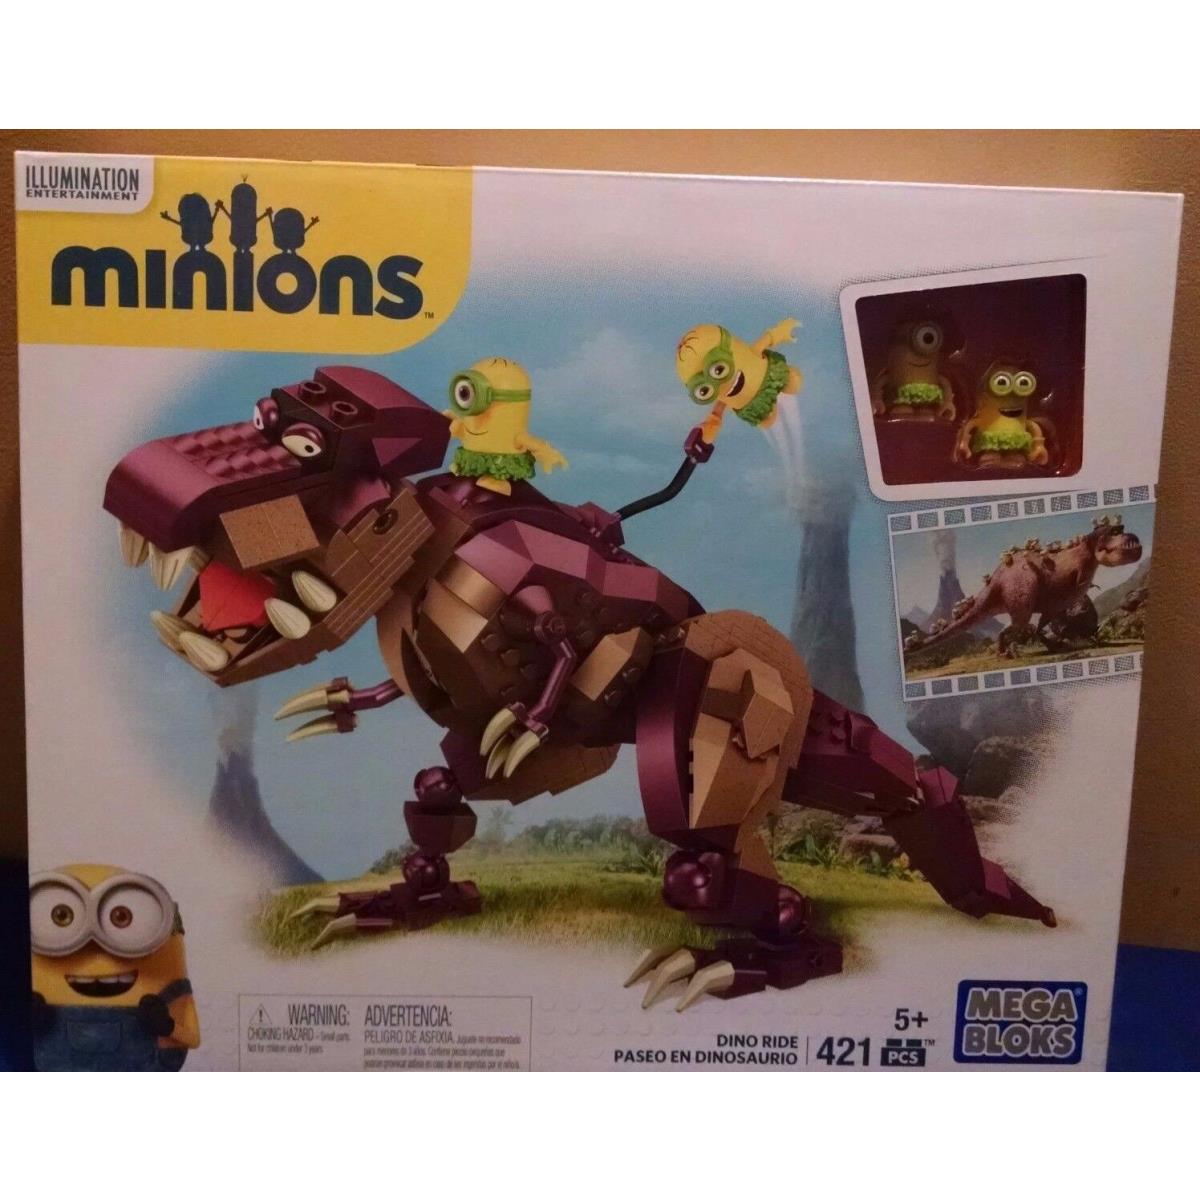 Mega Bloks Minions Dino Ride Building Kit 451 Pcs. Boys Girls 5 Yrs + 2015